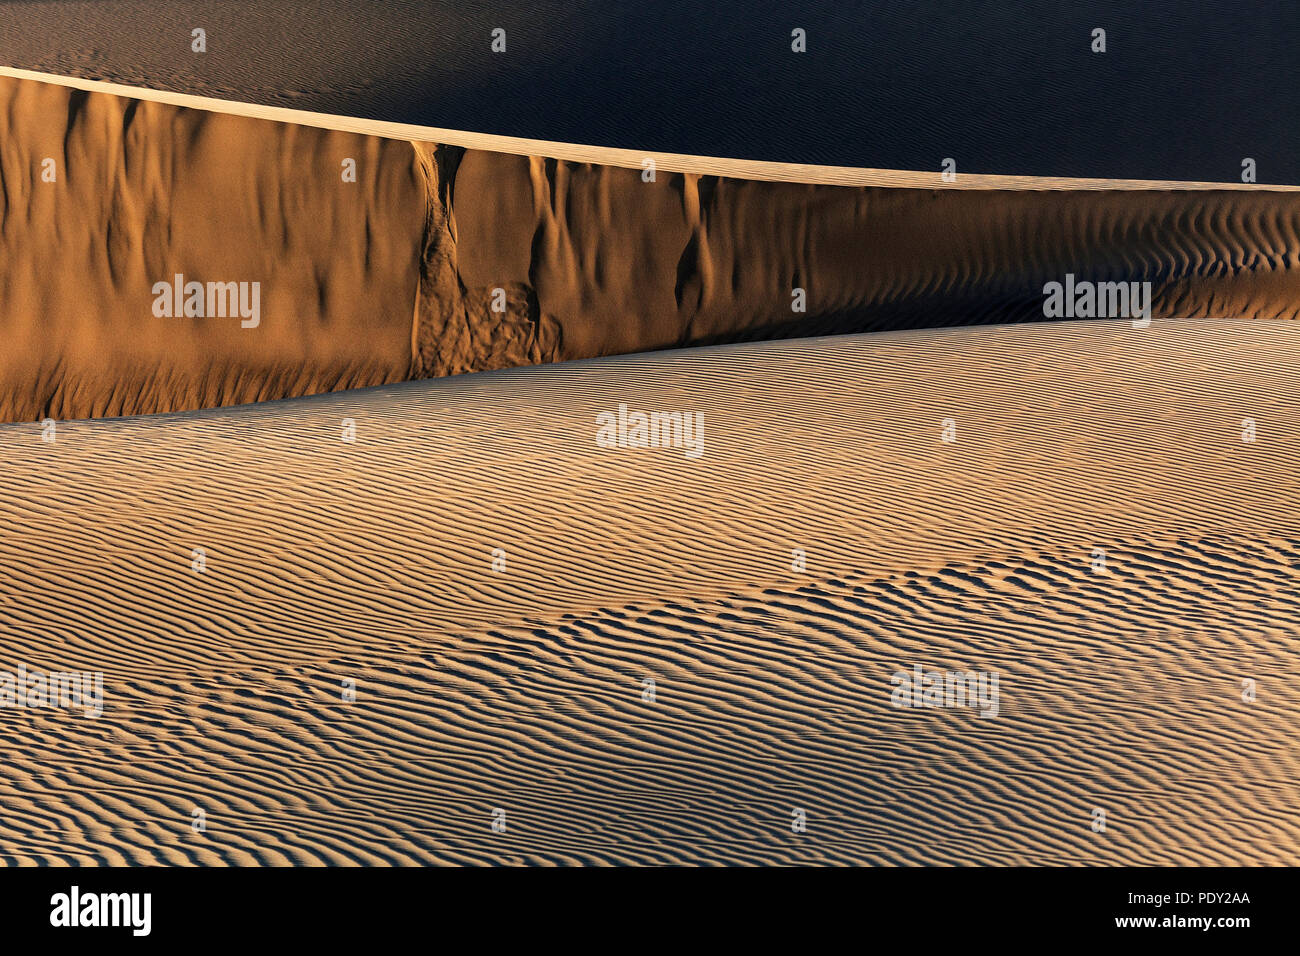 Paysage de dunes, Dunes de Maspalomas, Dunas de Maspalomas, les structures dans le sable, lumière du soir, réserve naturelle, Gran Canaria Banque D'Images